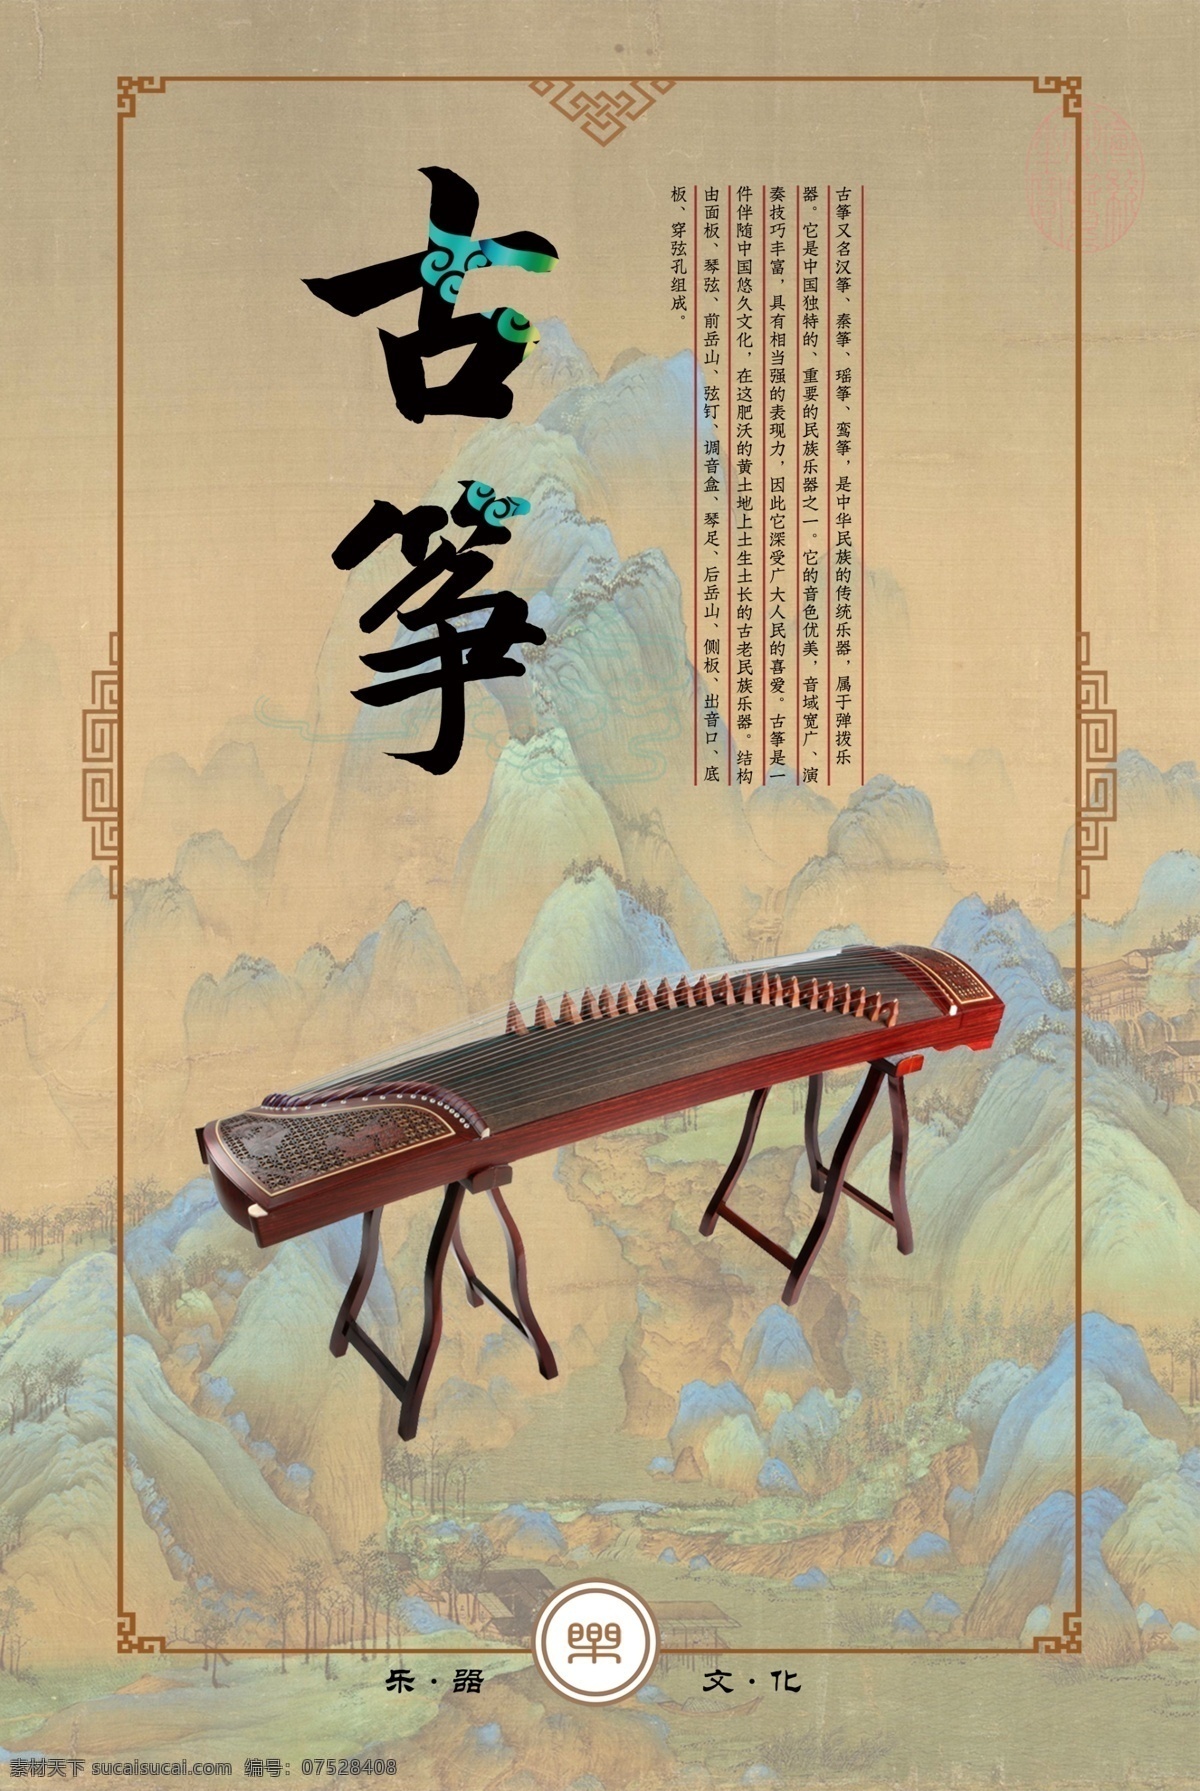 古筝图片 古风 乐器 音乐 展板 海报 文化 古筝 室内广告设计